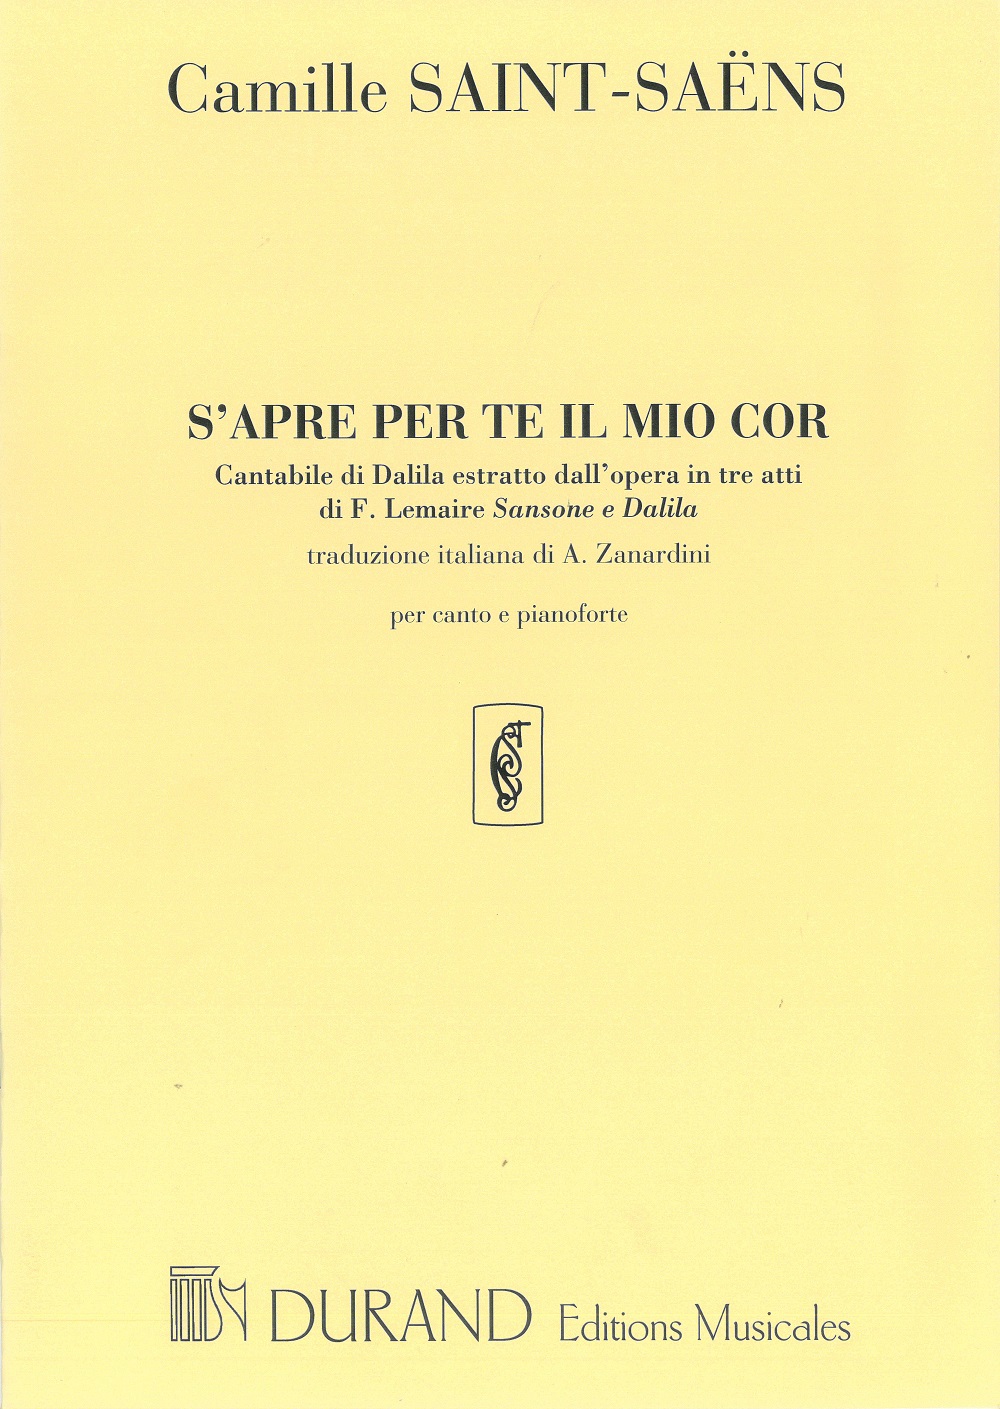 Camille Saint-Sans: S'Apre per te il moi cor - Cantabile di Dalida: Vocal and